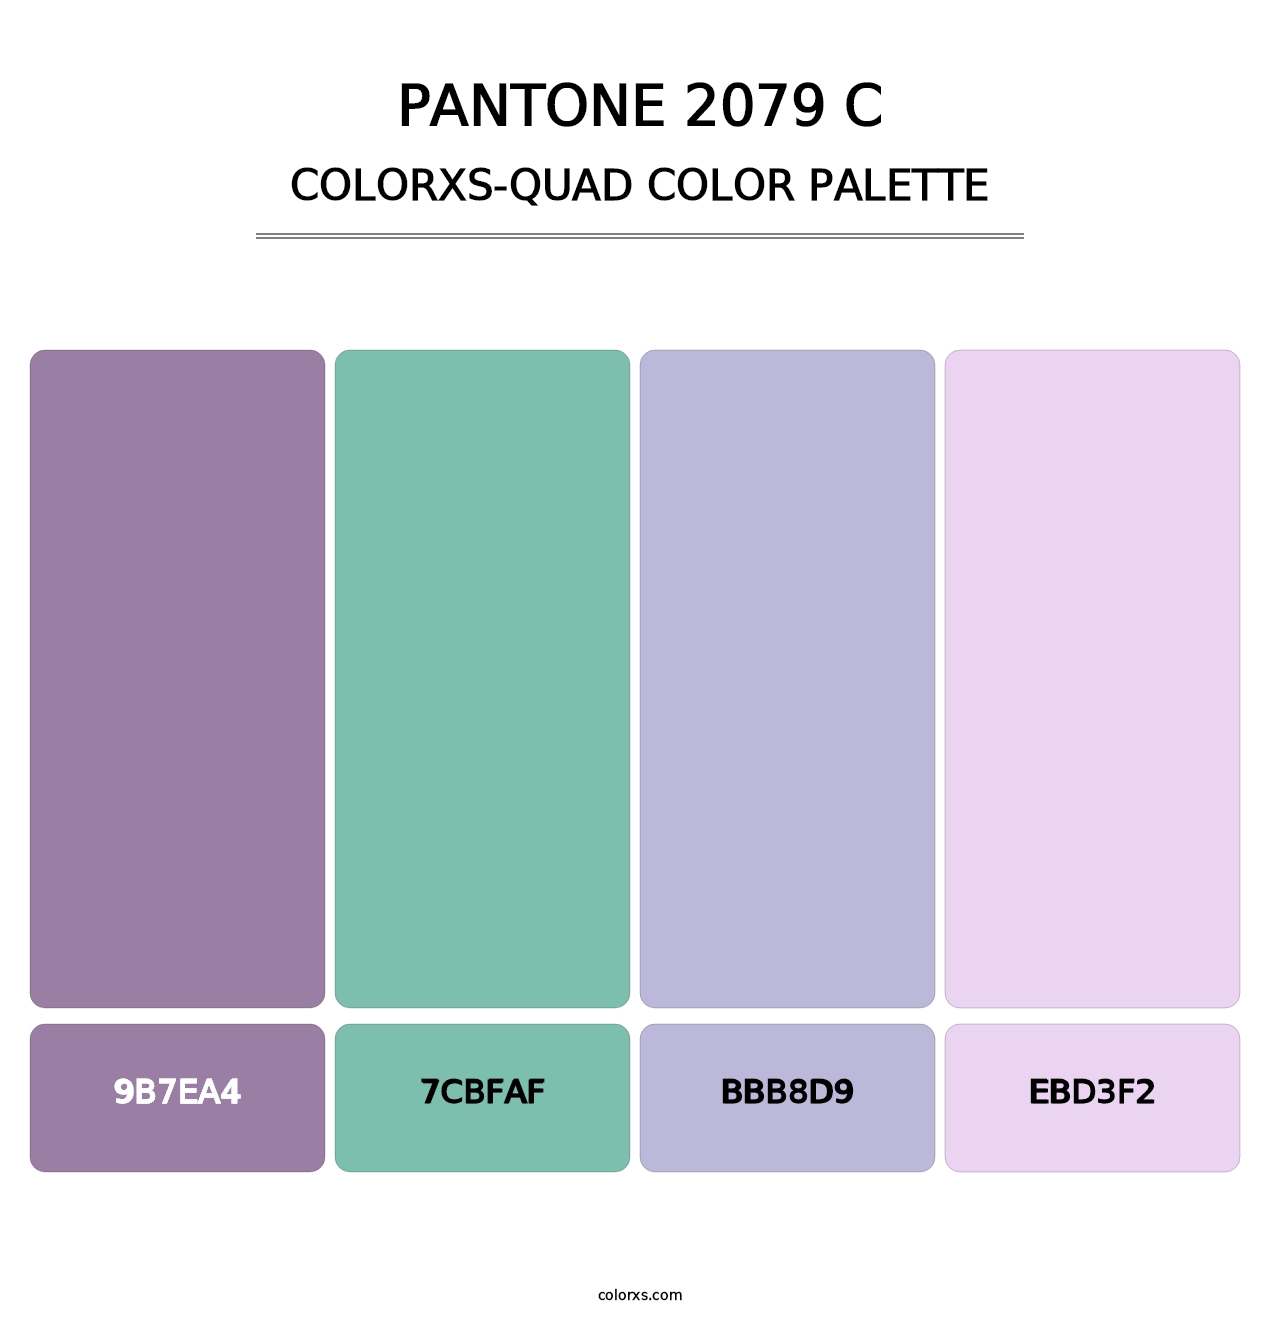 PANTONE 2079 C - Colorxs Quad Palette